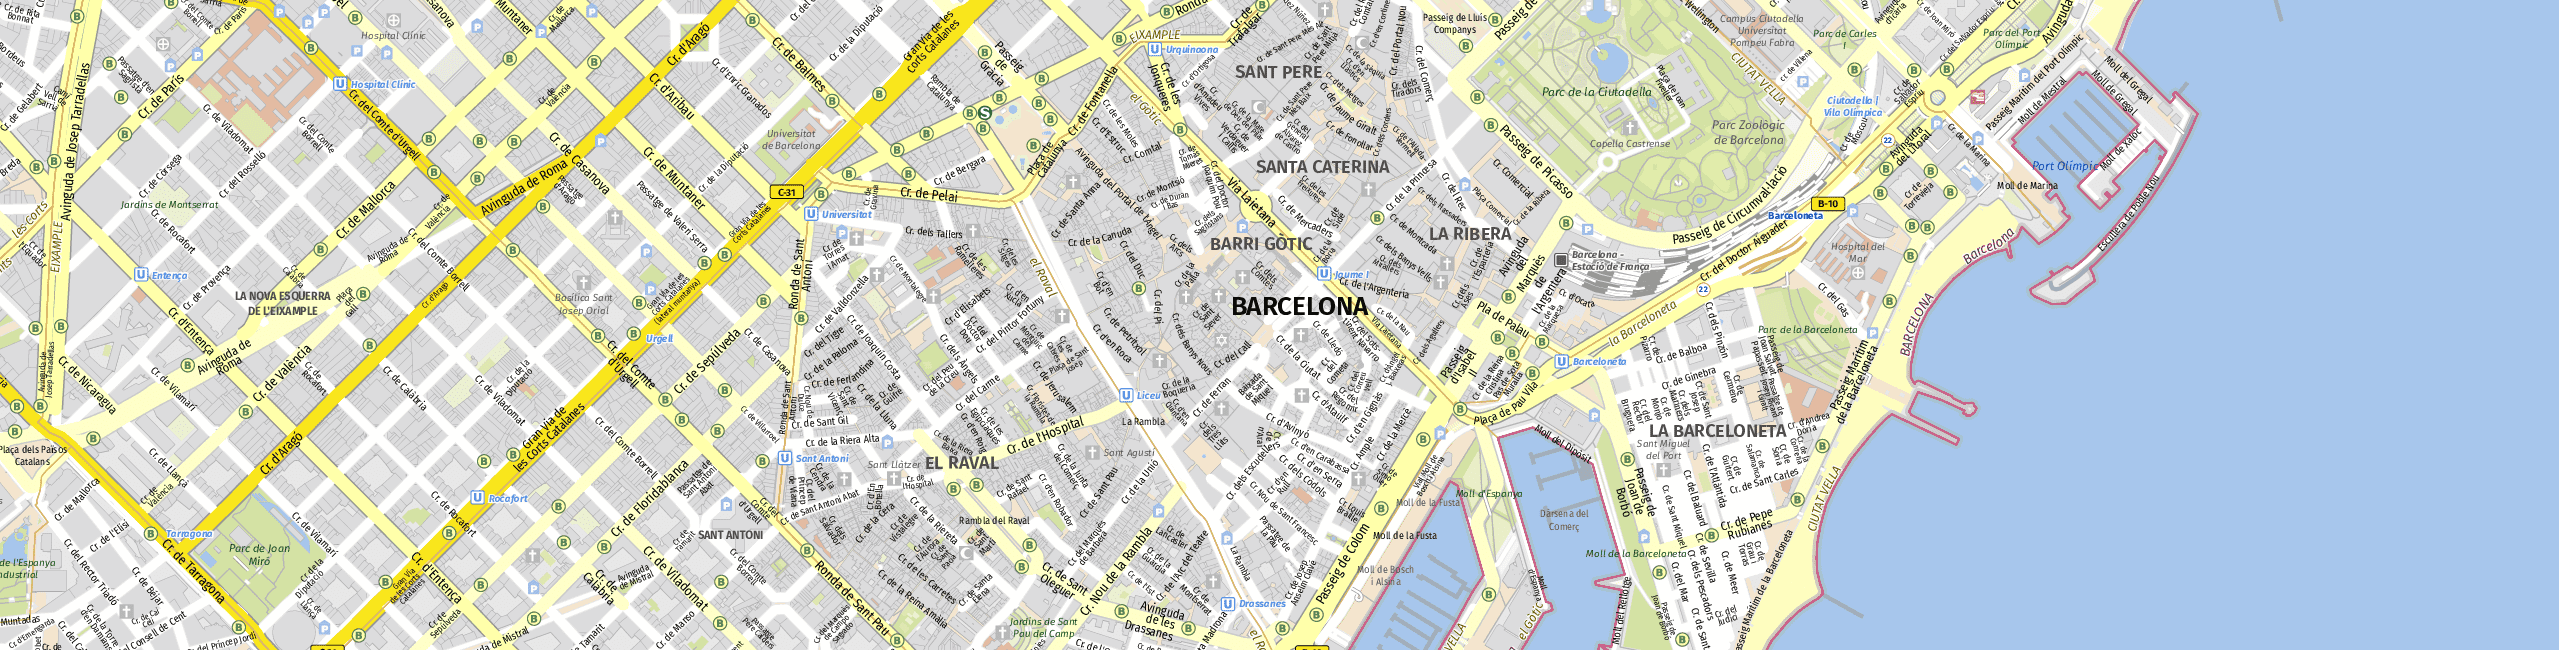 Stadtplan Barcelona zum Downloaden.